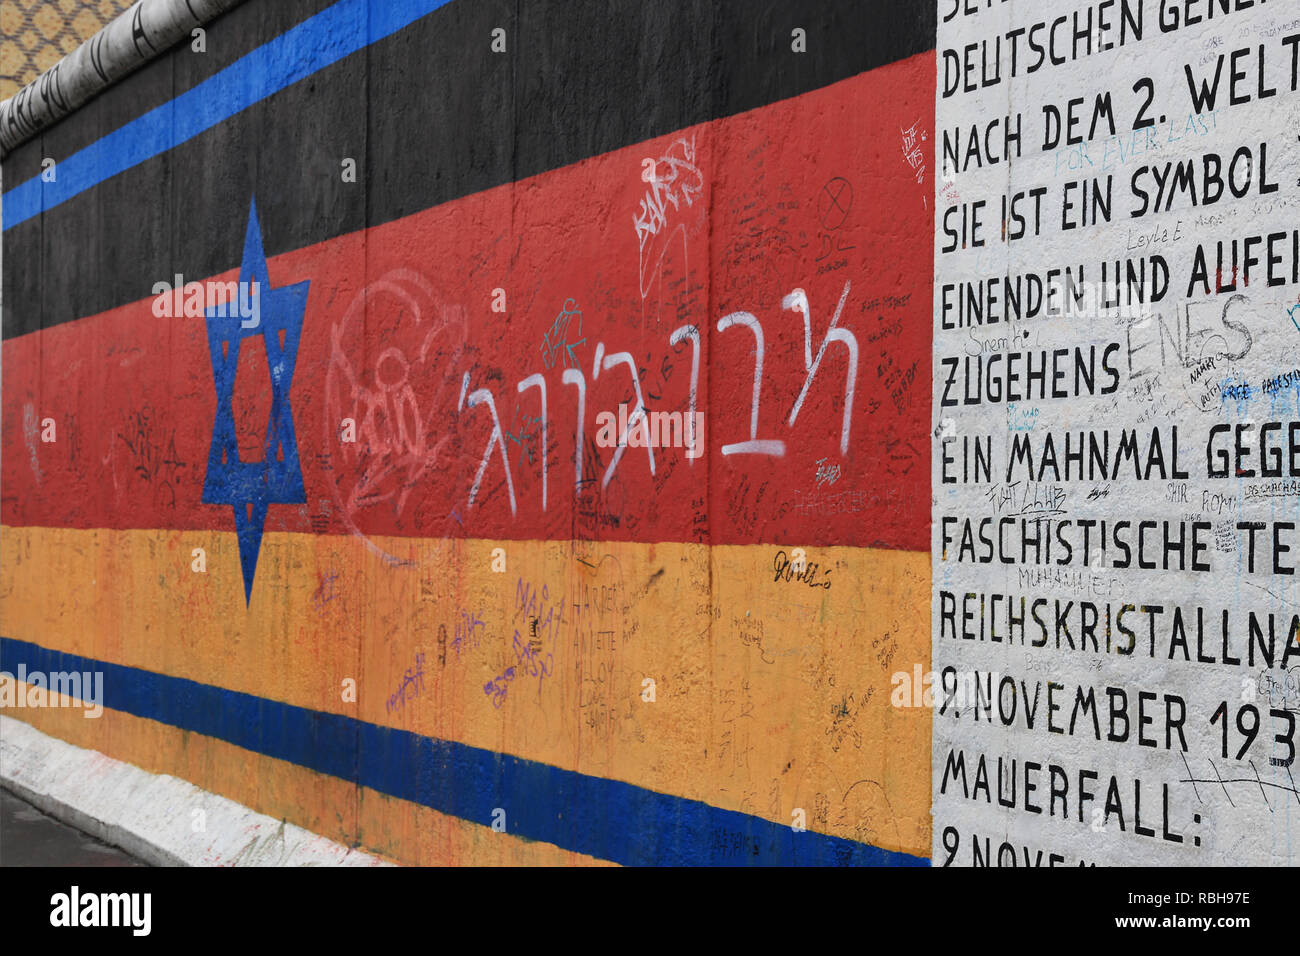 Berlin - Deutschland: Juni 2016: Flagge von Deutschland und Israel über die Berliner Mauer gemalt, East Side Gallery (Vaterland von Gunther Schafer) Stockfoto